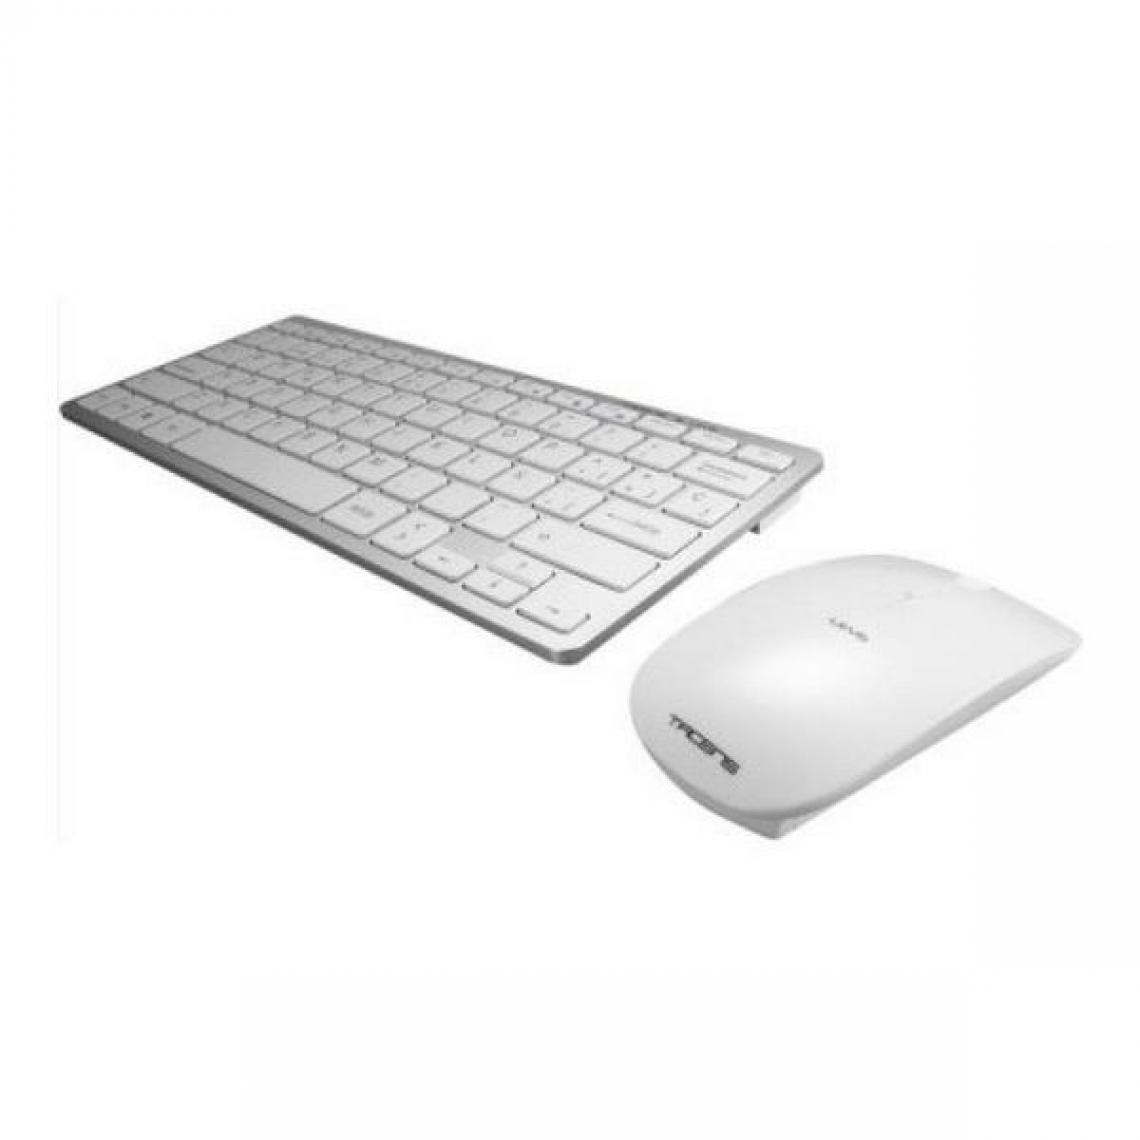 Totalcadeau - Clavier et souris sans fil Blanc - Pack de 2 produit pour PC et ordinateur pas cher - Clavier